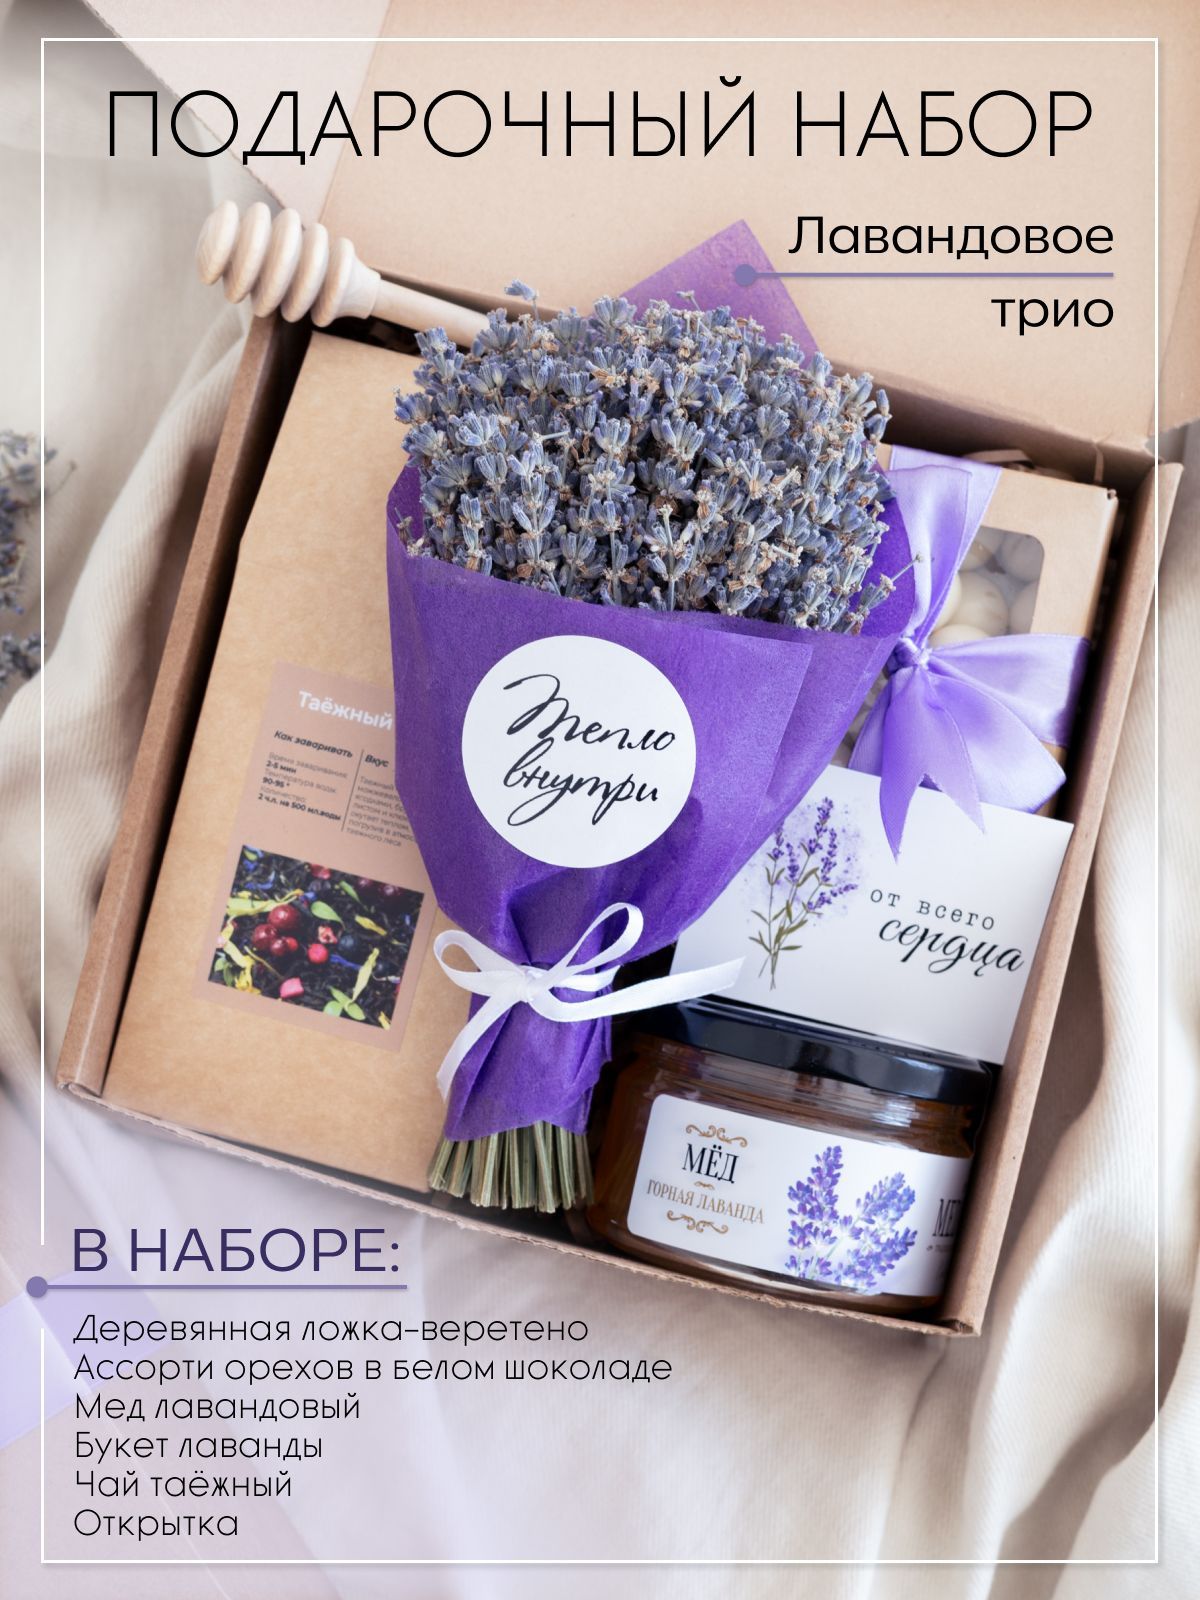 Букеты из конфет в подарок на выпускной, день рождения, свадьбу в Санкт-Петербурге